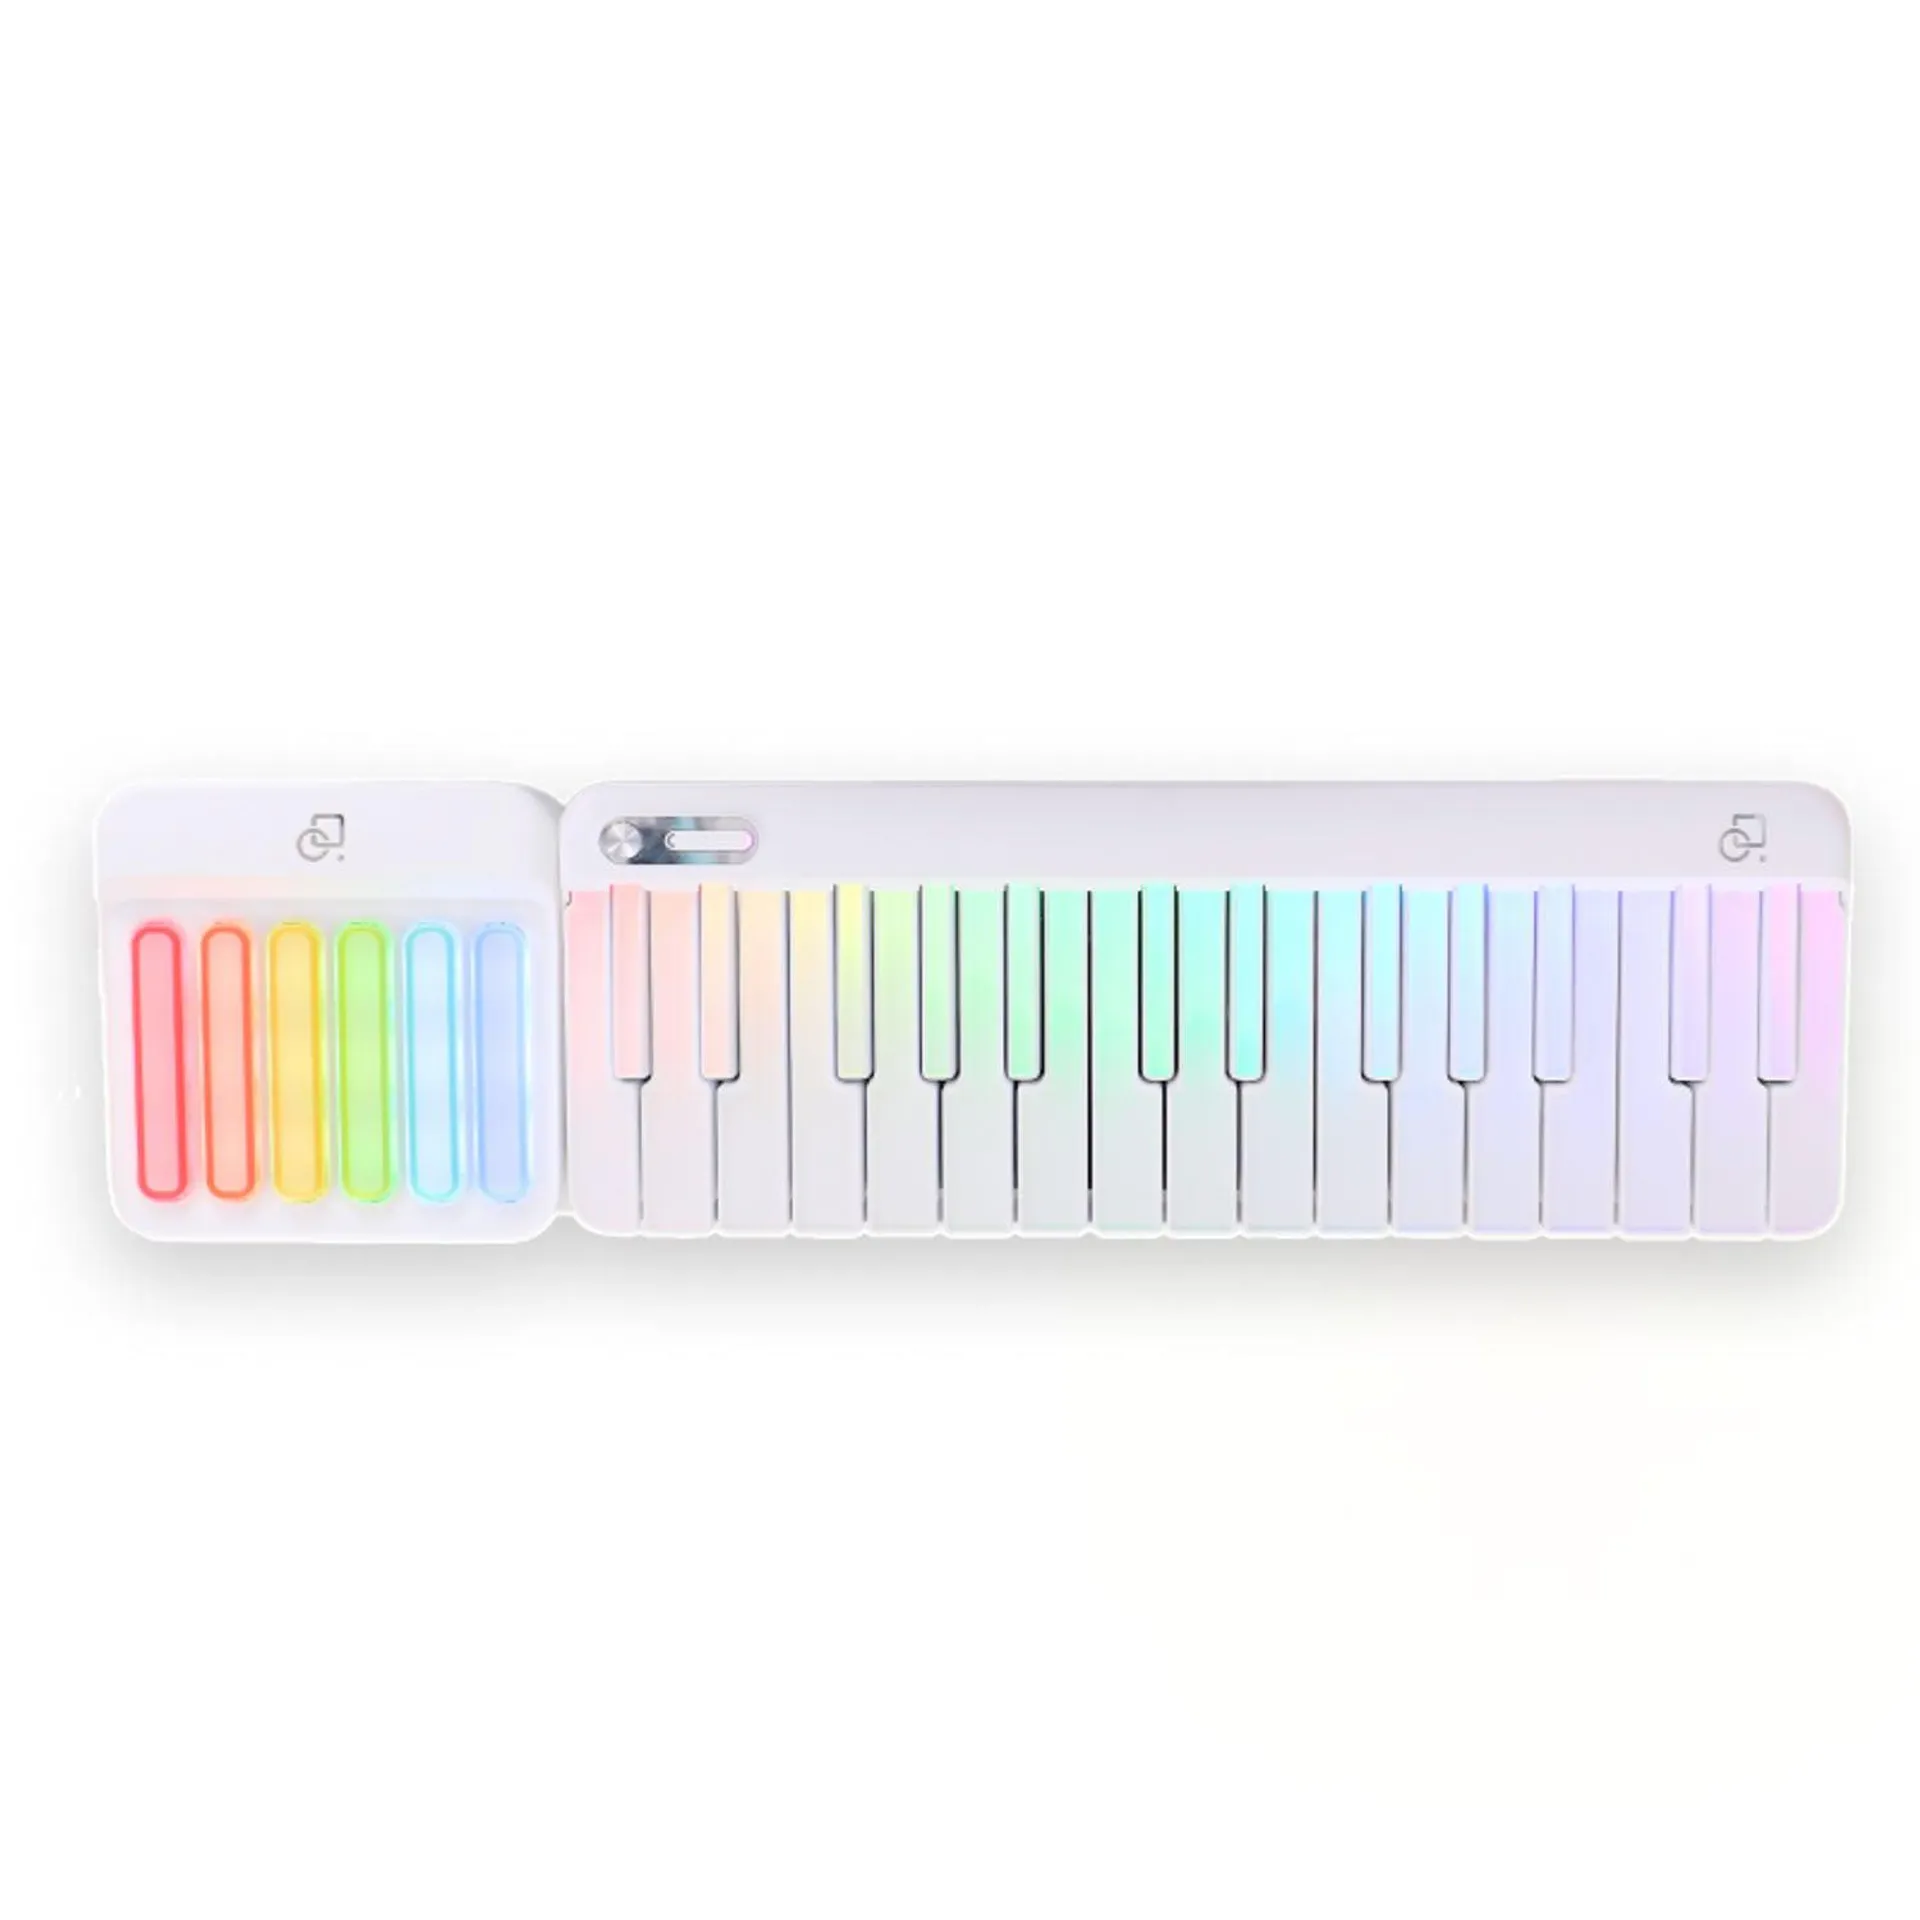 Popupiano Portable Smart Piano Midi Keyboard Controller